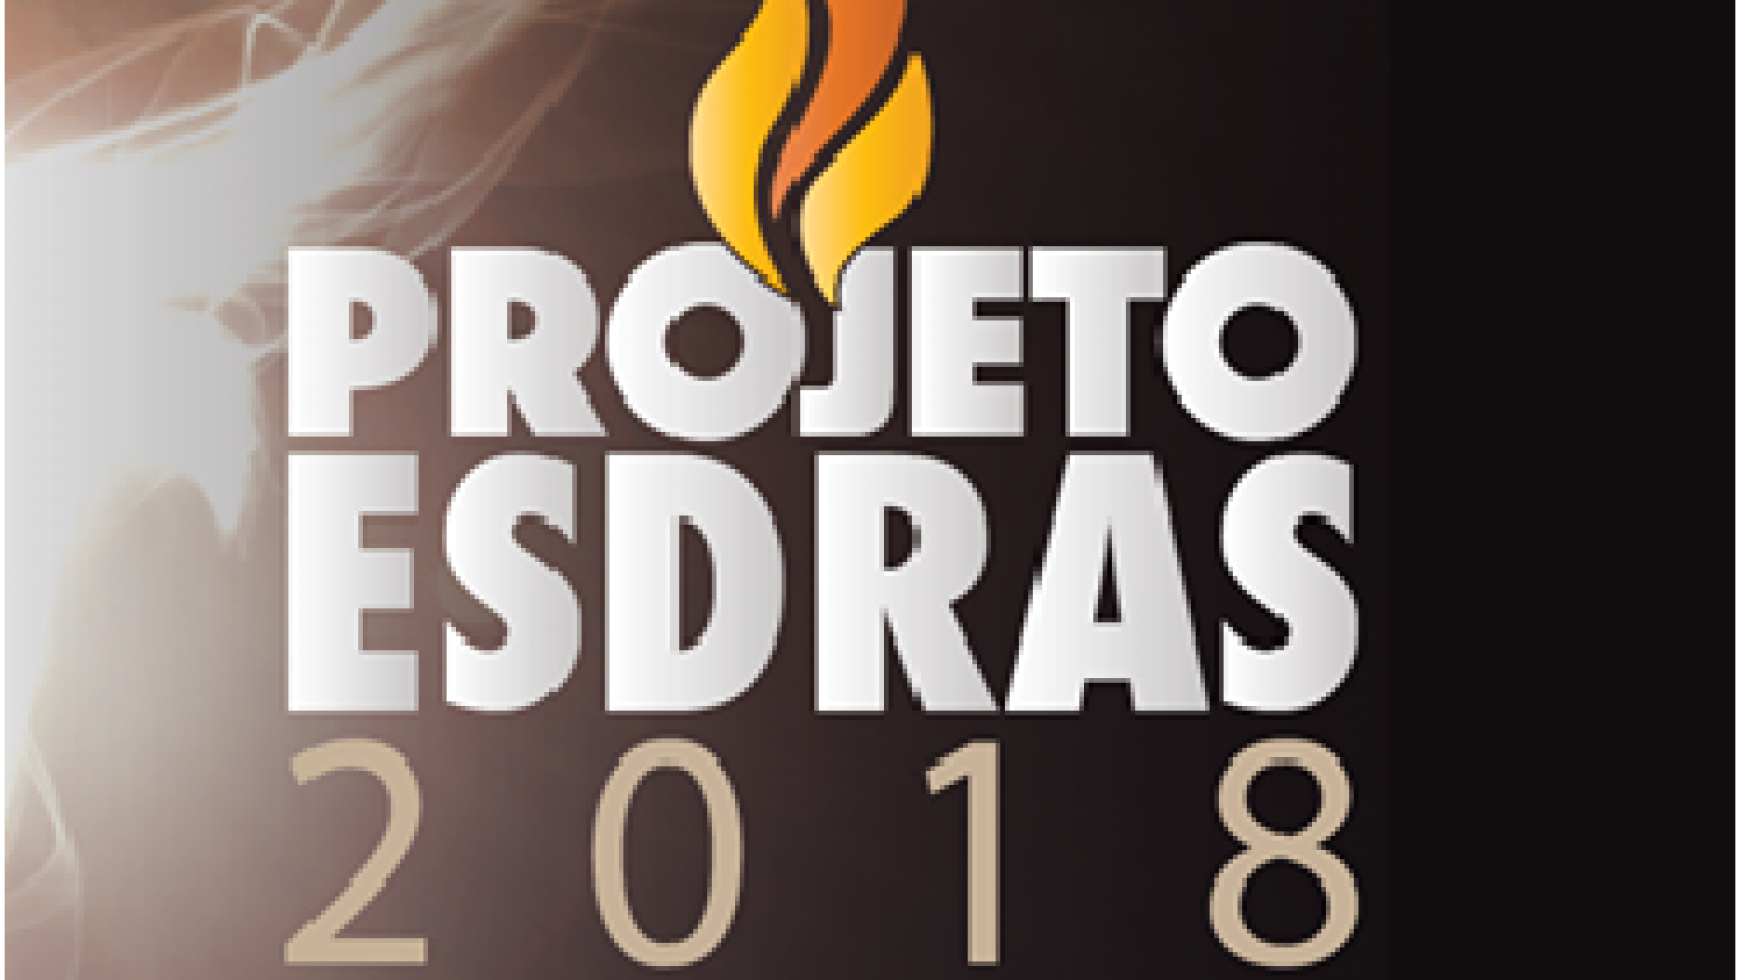 CONGRESSO DE MISSÕES – PROJETO ESDRAS 2018